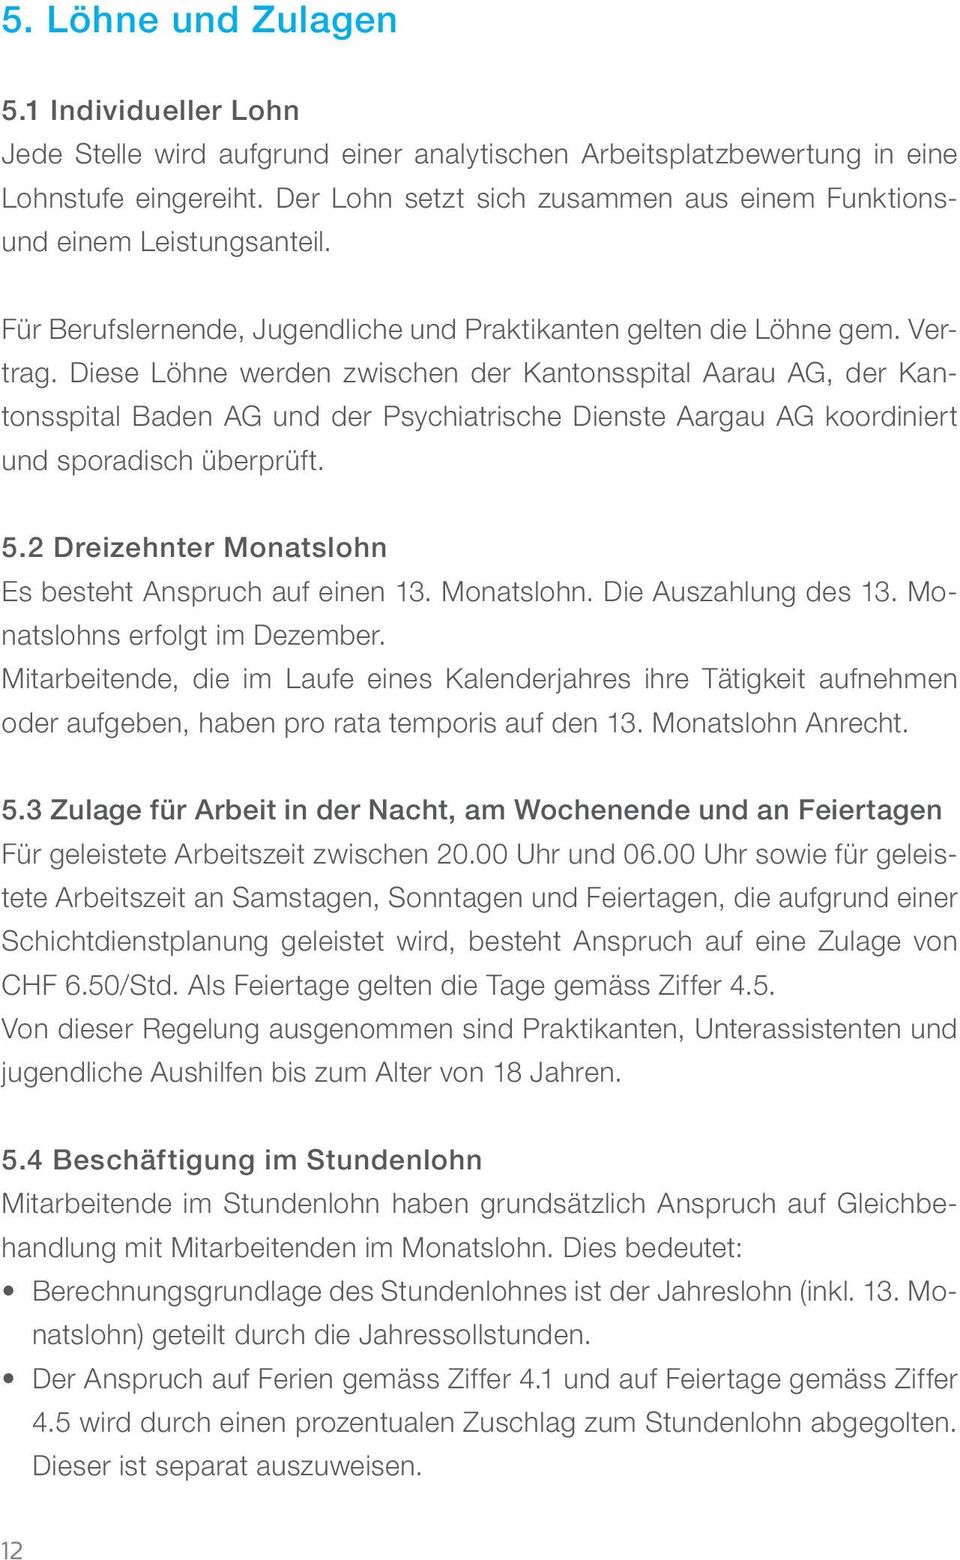 Diese Löhne werden zwischen der Kantonsspital Aarau AG, der Kantonsspital Baden AG und der Psychiatrische Dienste Aargau AG koordiniert und sporadisch überprüft. 5.